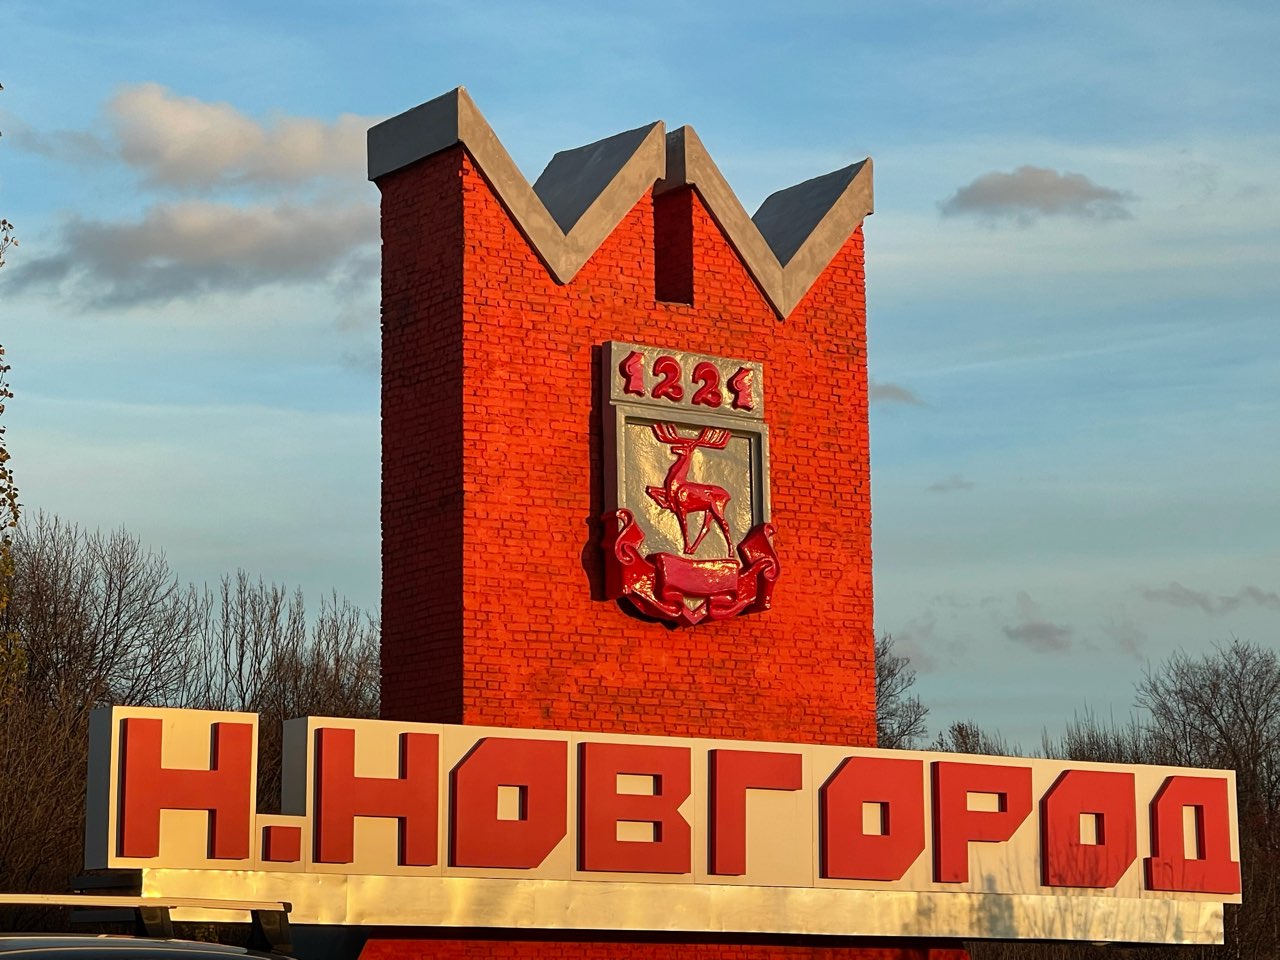 Введение ограничений на въезд в Нижегородскую область из-за COVID-19 пока не планируется  - фото 1